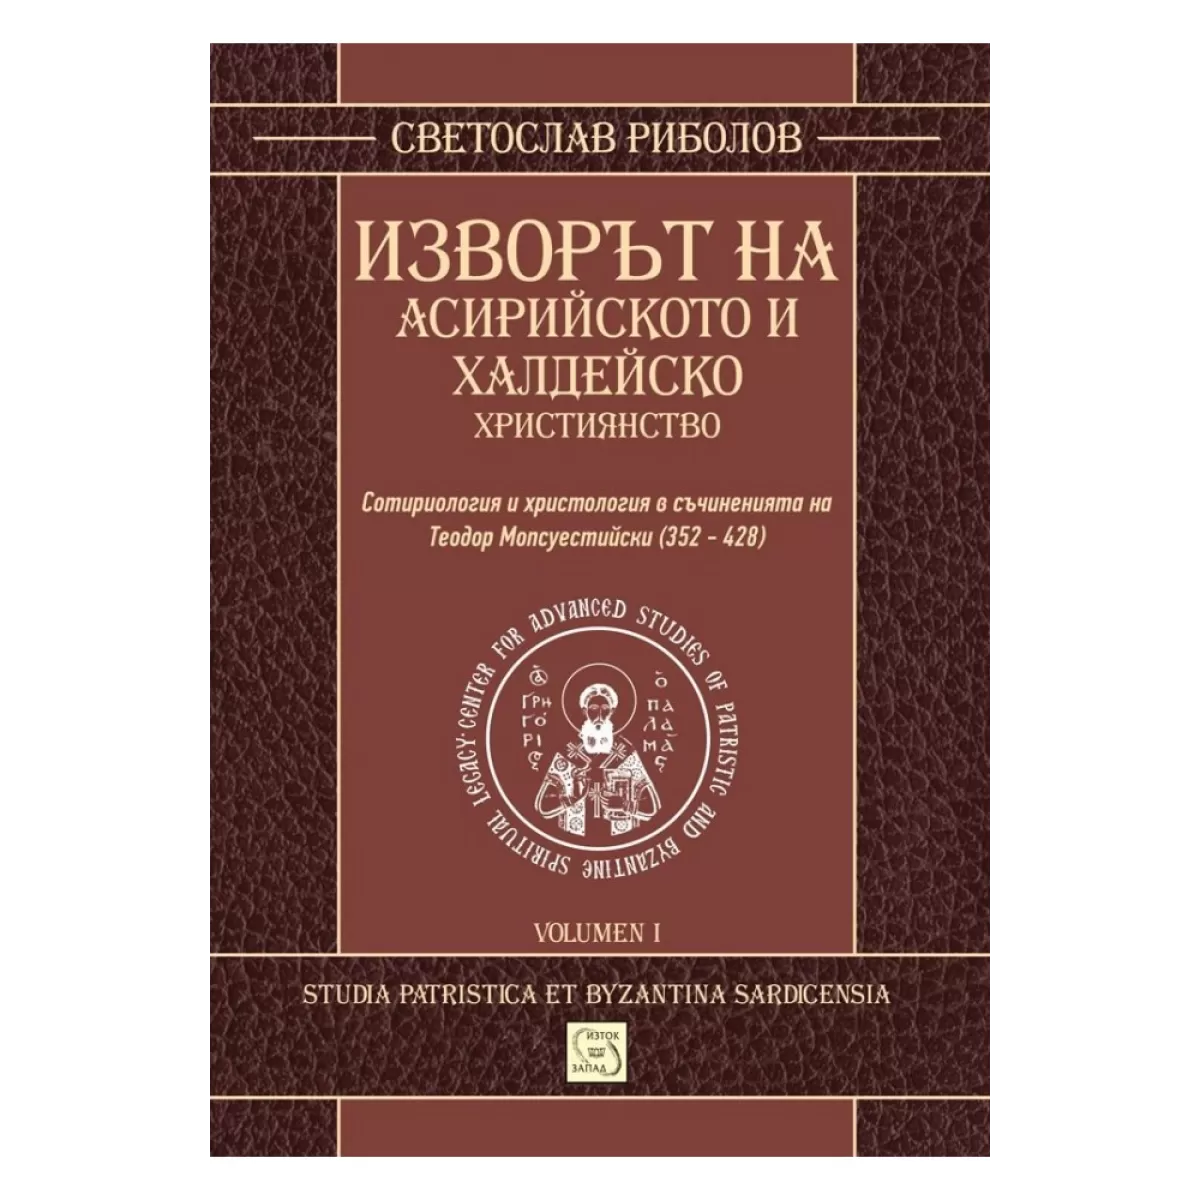 Изворът на асирийското и халдейско християнство